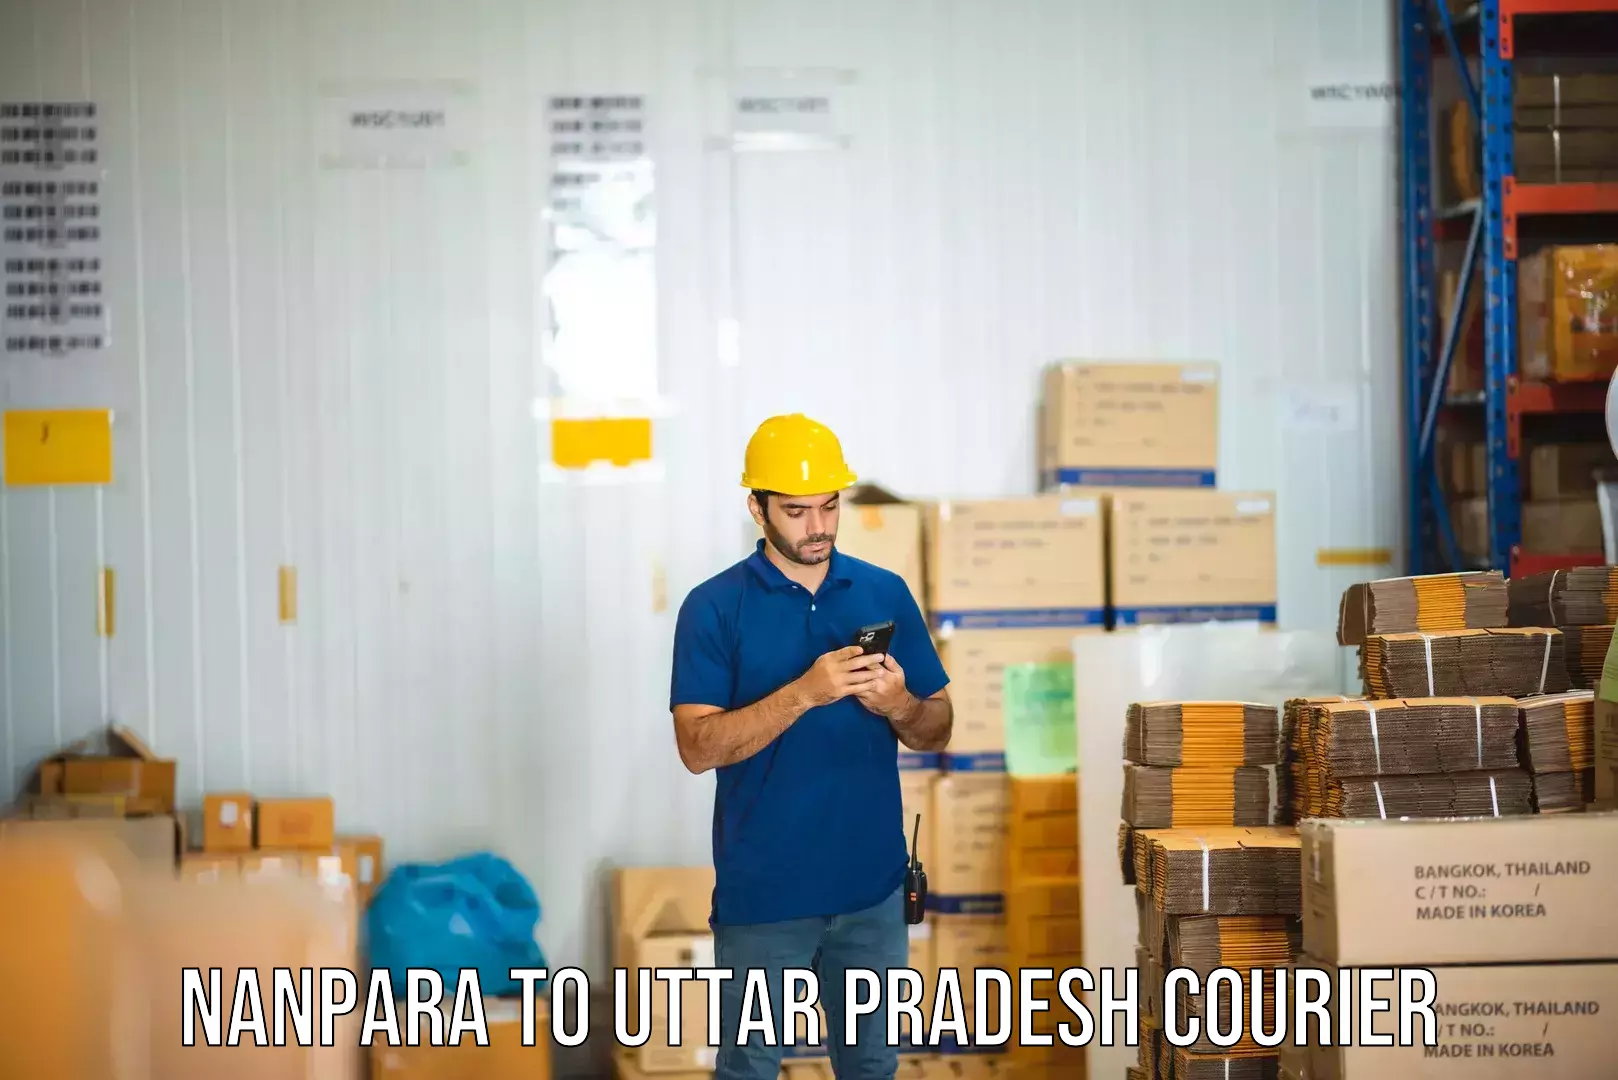 Global shipping networks Nanpara to Pratapgarh